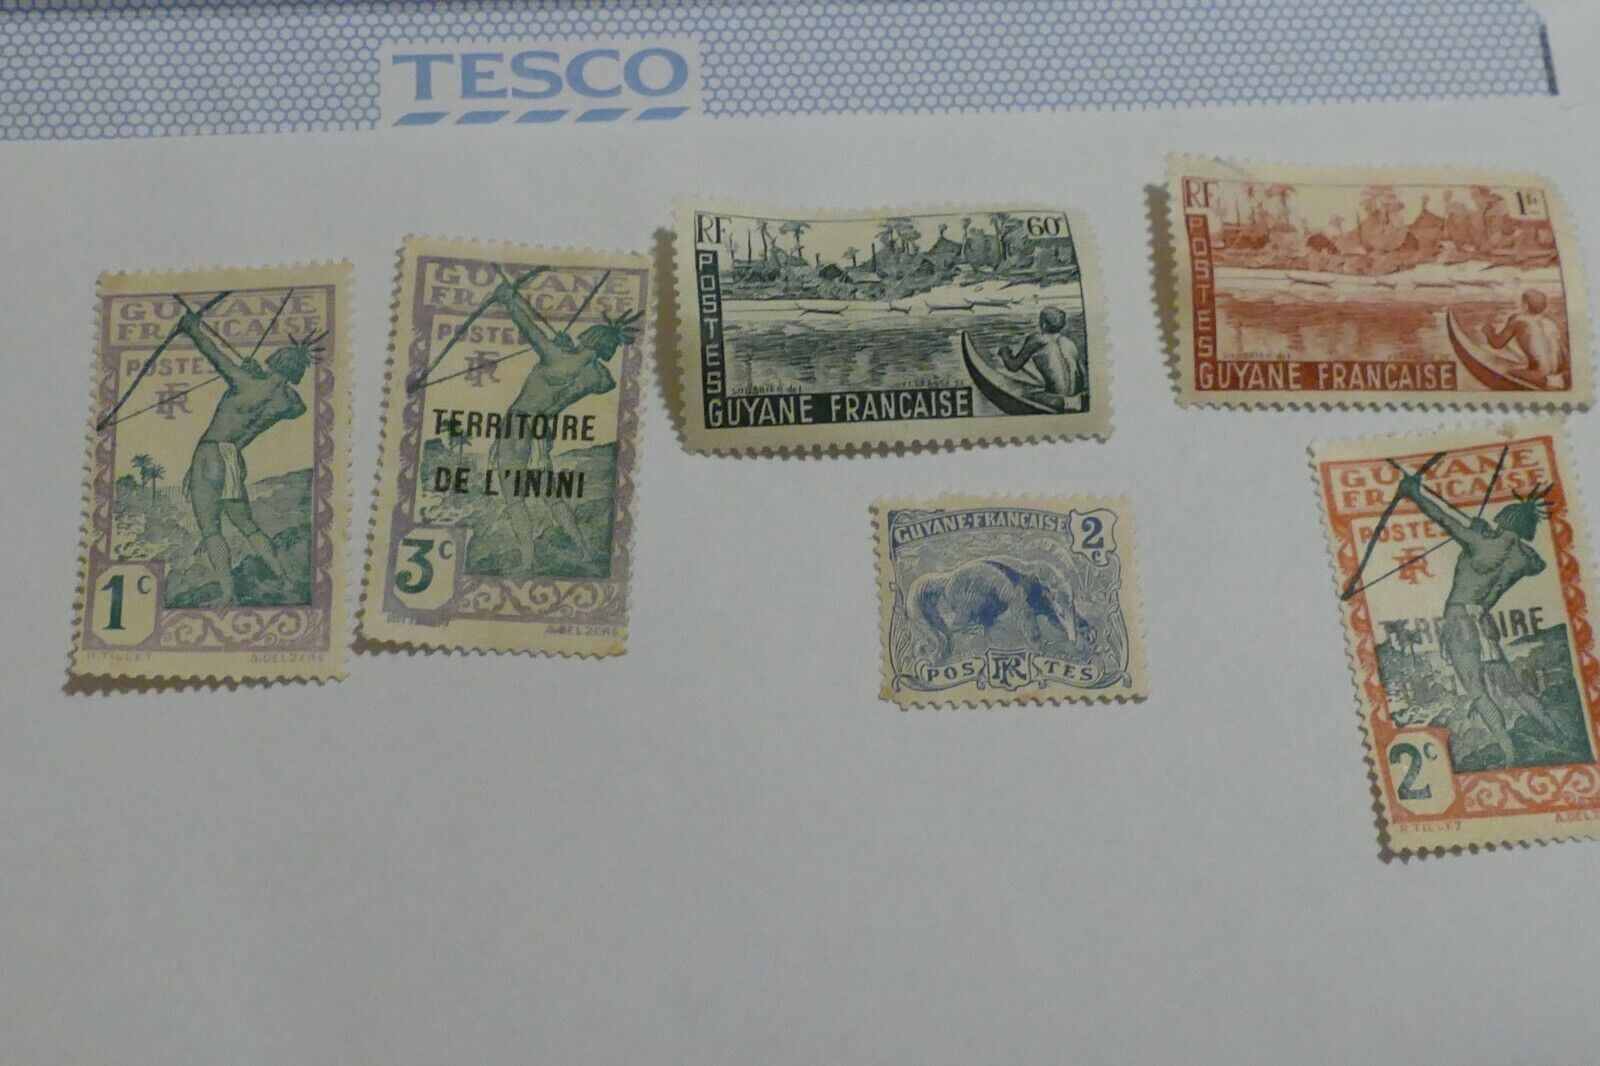 2021人気新作 6 French Guyana used postage collectors - stamps 海外限定 posta philately